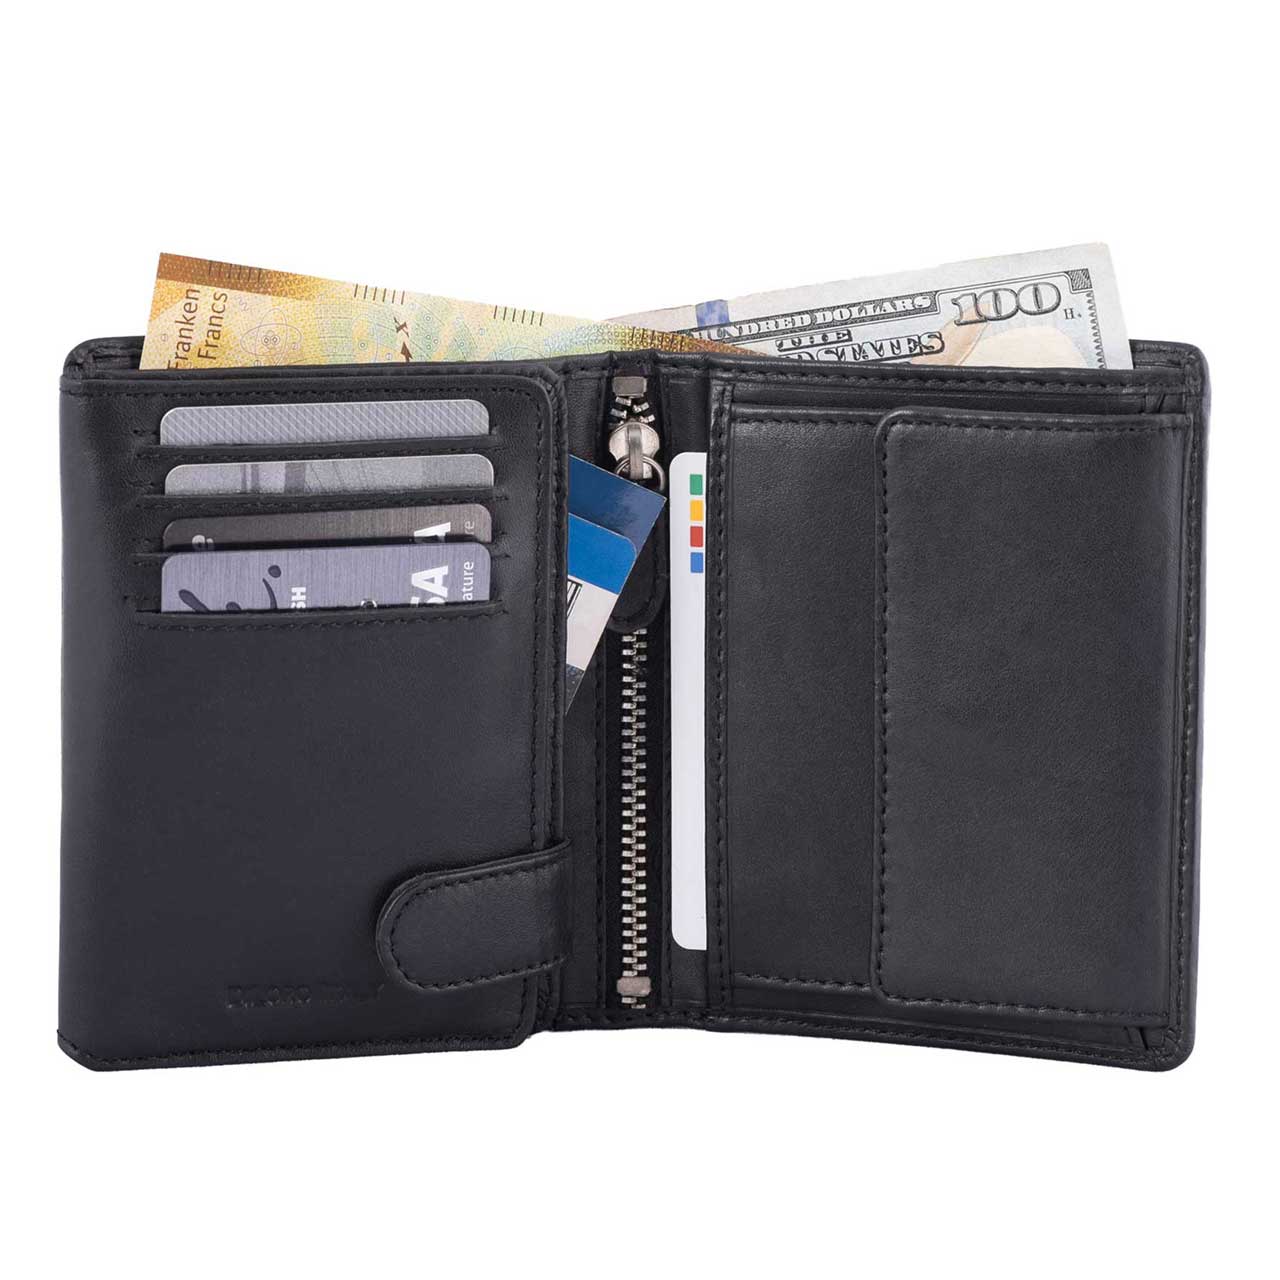 DiLoro Men's Large RFID Blocking Bifold Leather Wallet